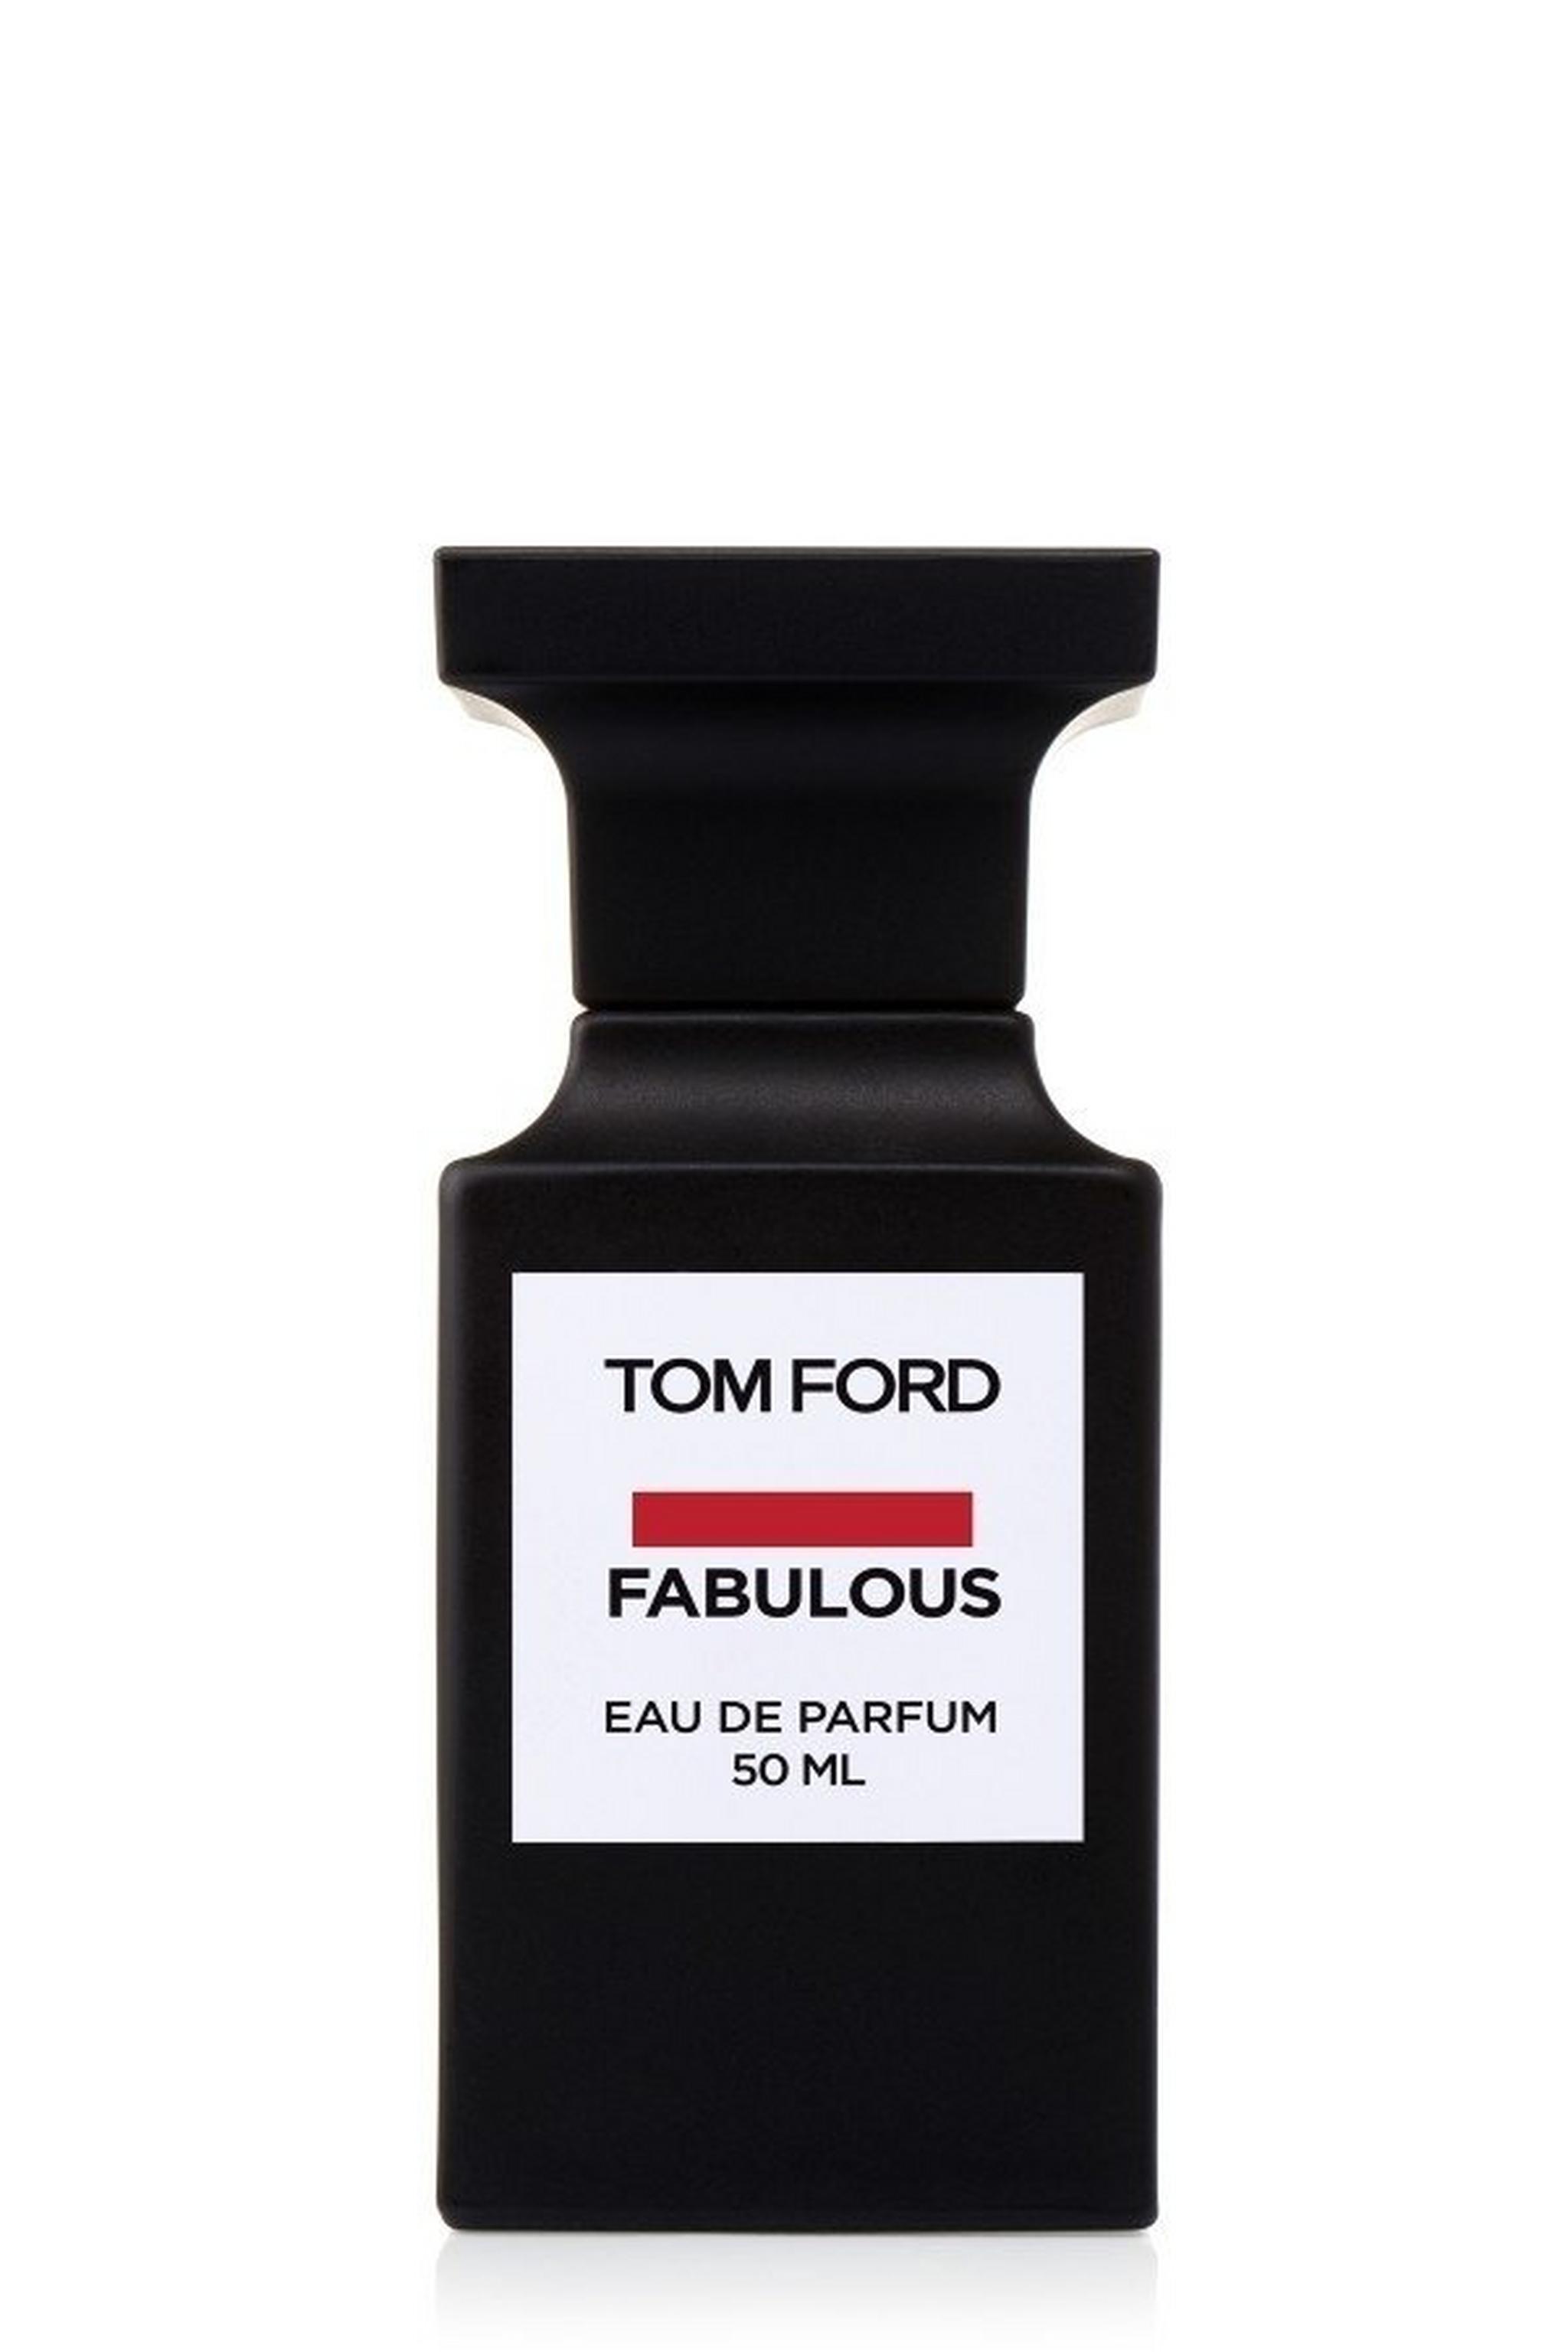 TOM FORD Fabulous - Eau De Parfum 50 ml